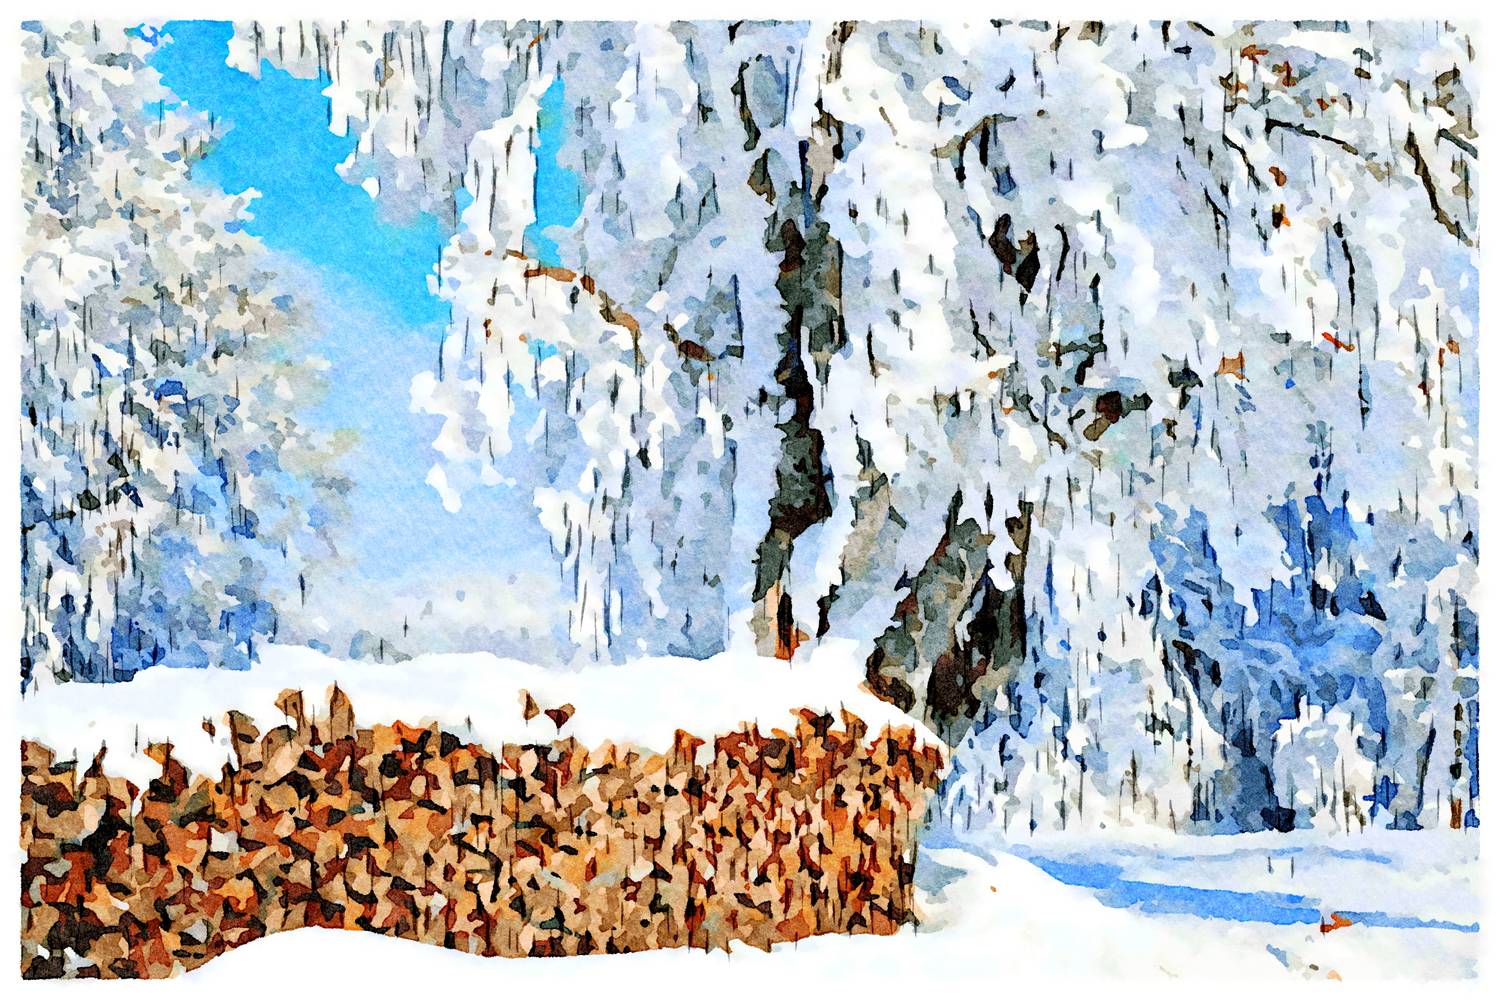 Holzstapel im Winter from Saskia Ben Jemaa